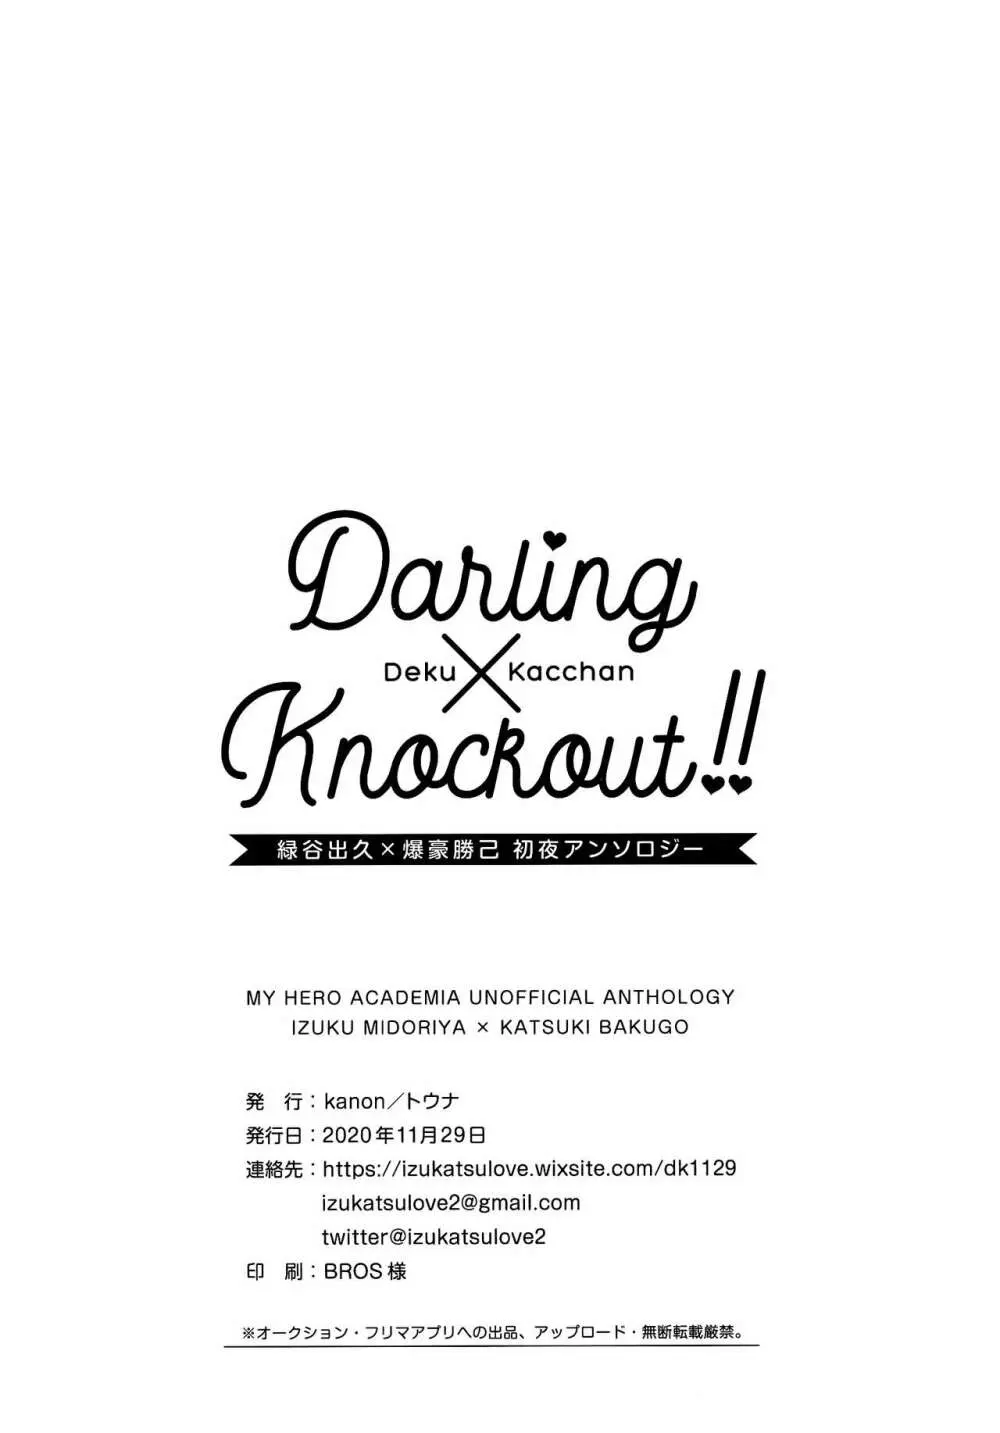 【通常版】出勝初夜アンソロジー「Darling×Knockout!!」僕のヒーローアカデミア) 210ページ